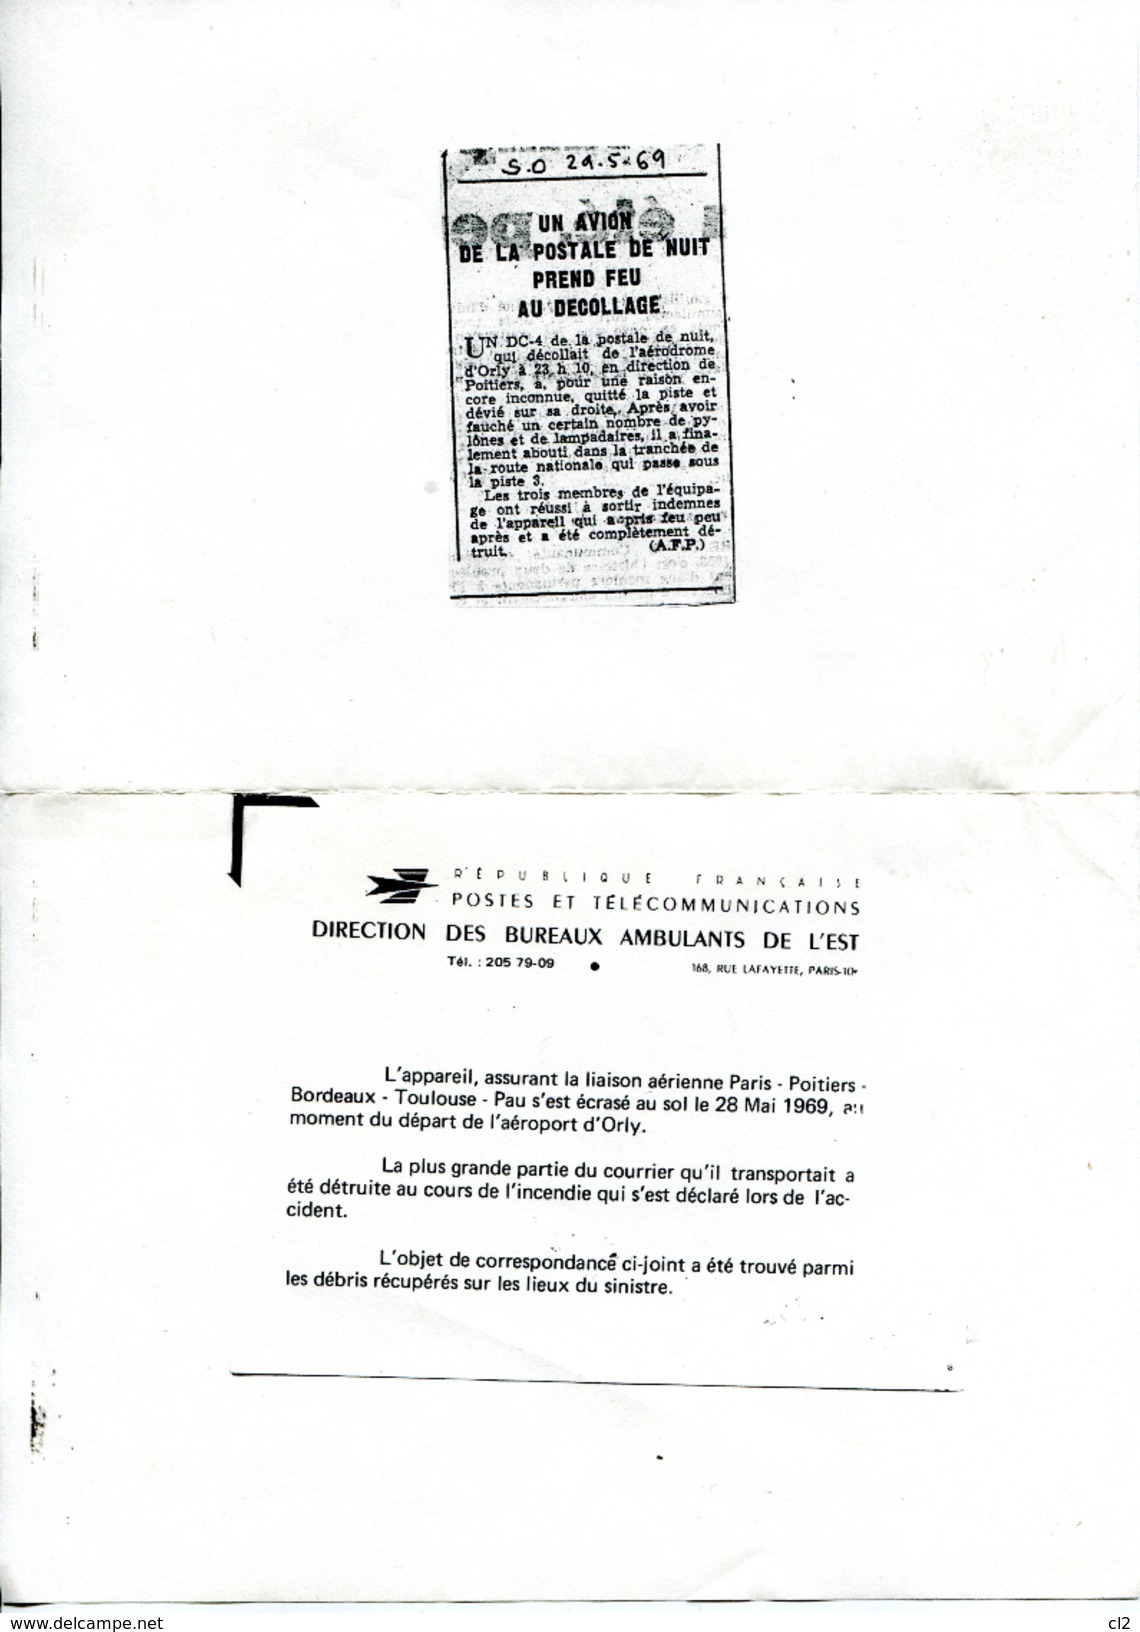 # - 28 Mai 1969 - ORLY - Accident D'un DC4 De La Postale - Courrier Ré-acheminé Par La Poste - Crash Post